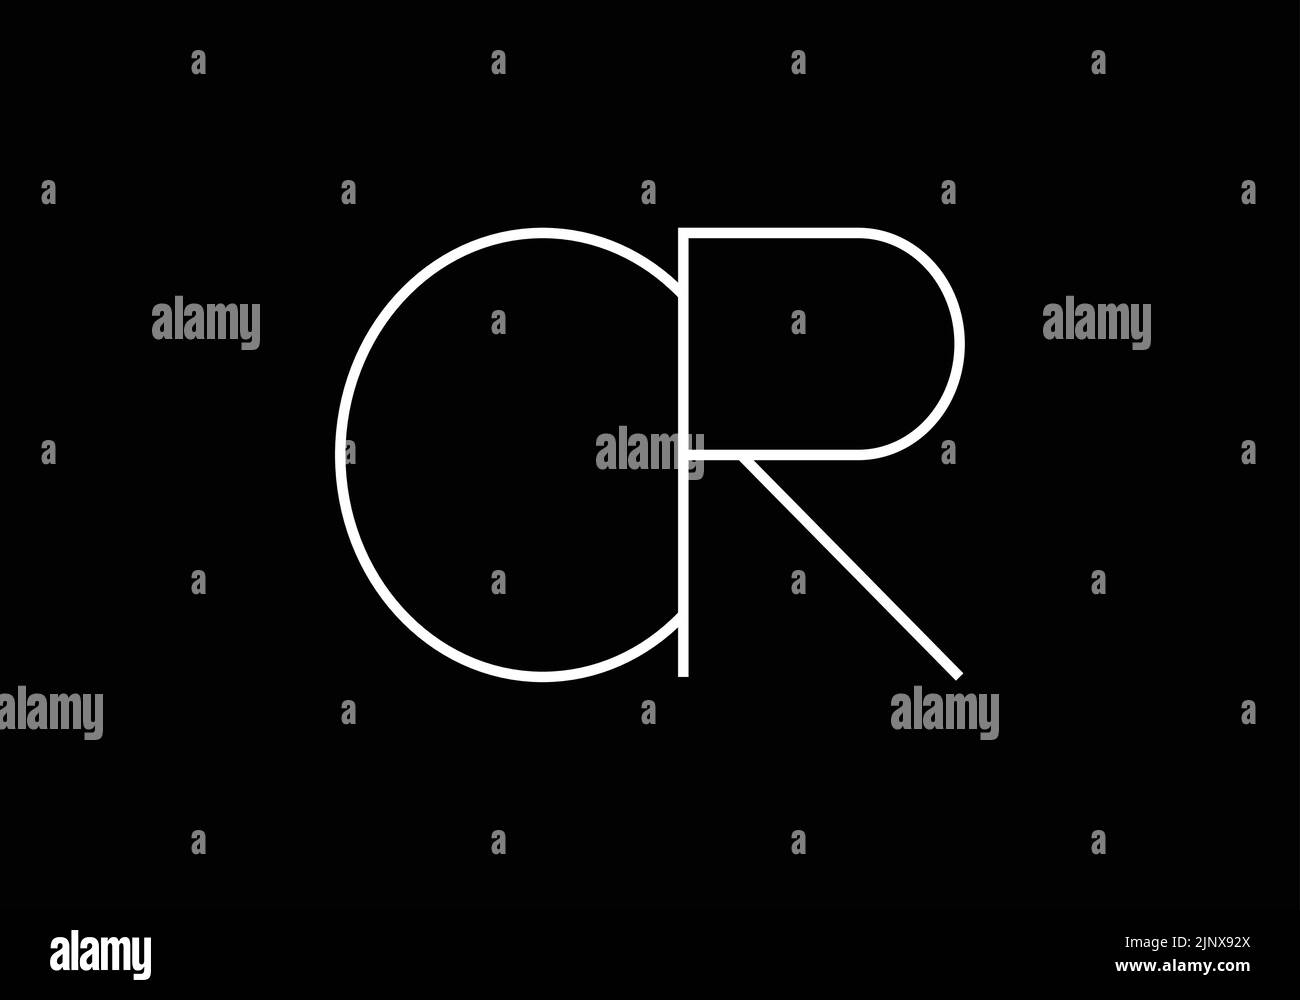 Initials alphabet letters CR or C R monogram logo Stock Vector